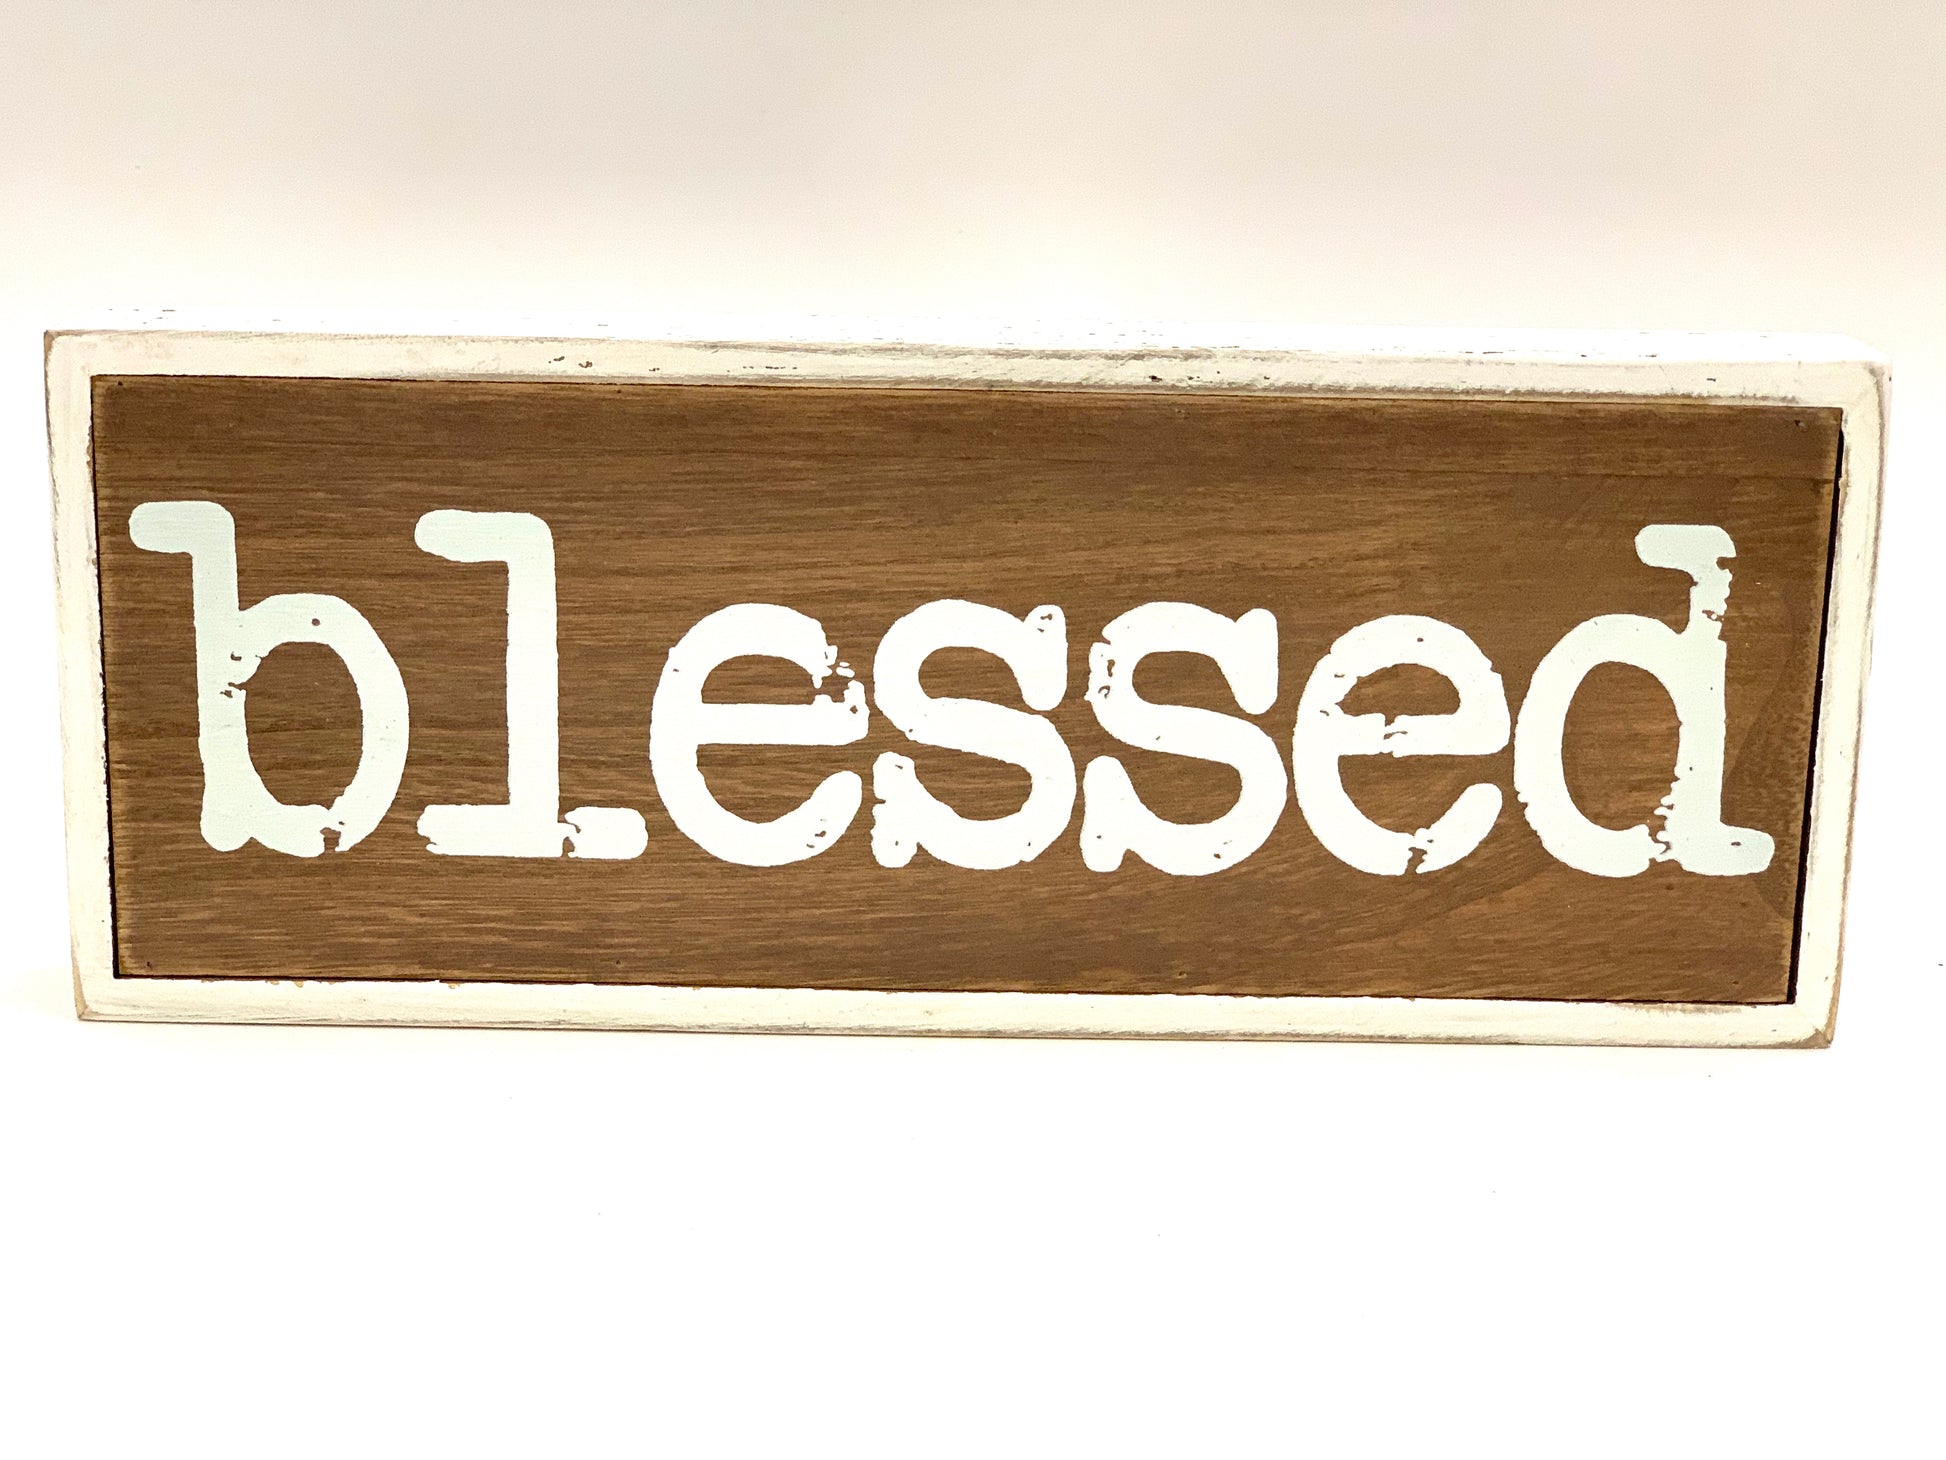 Blessed Wood Sign - Designer DIY